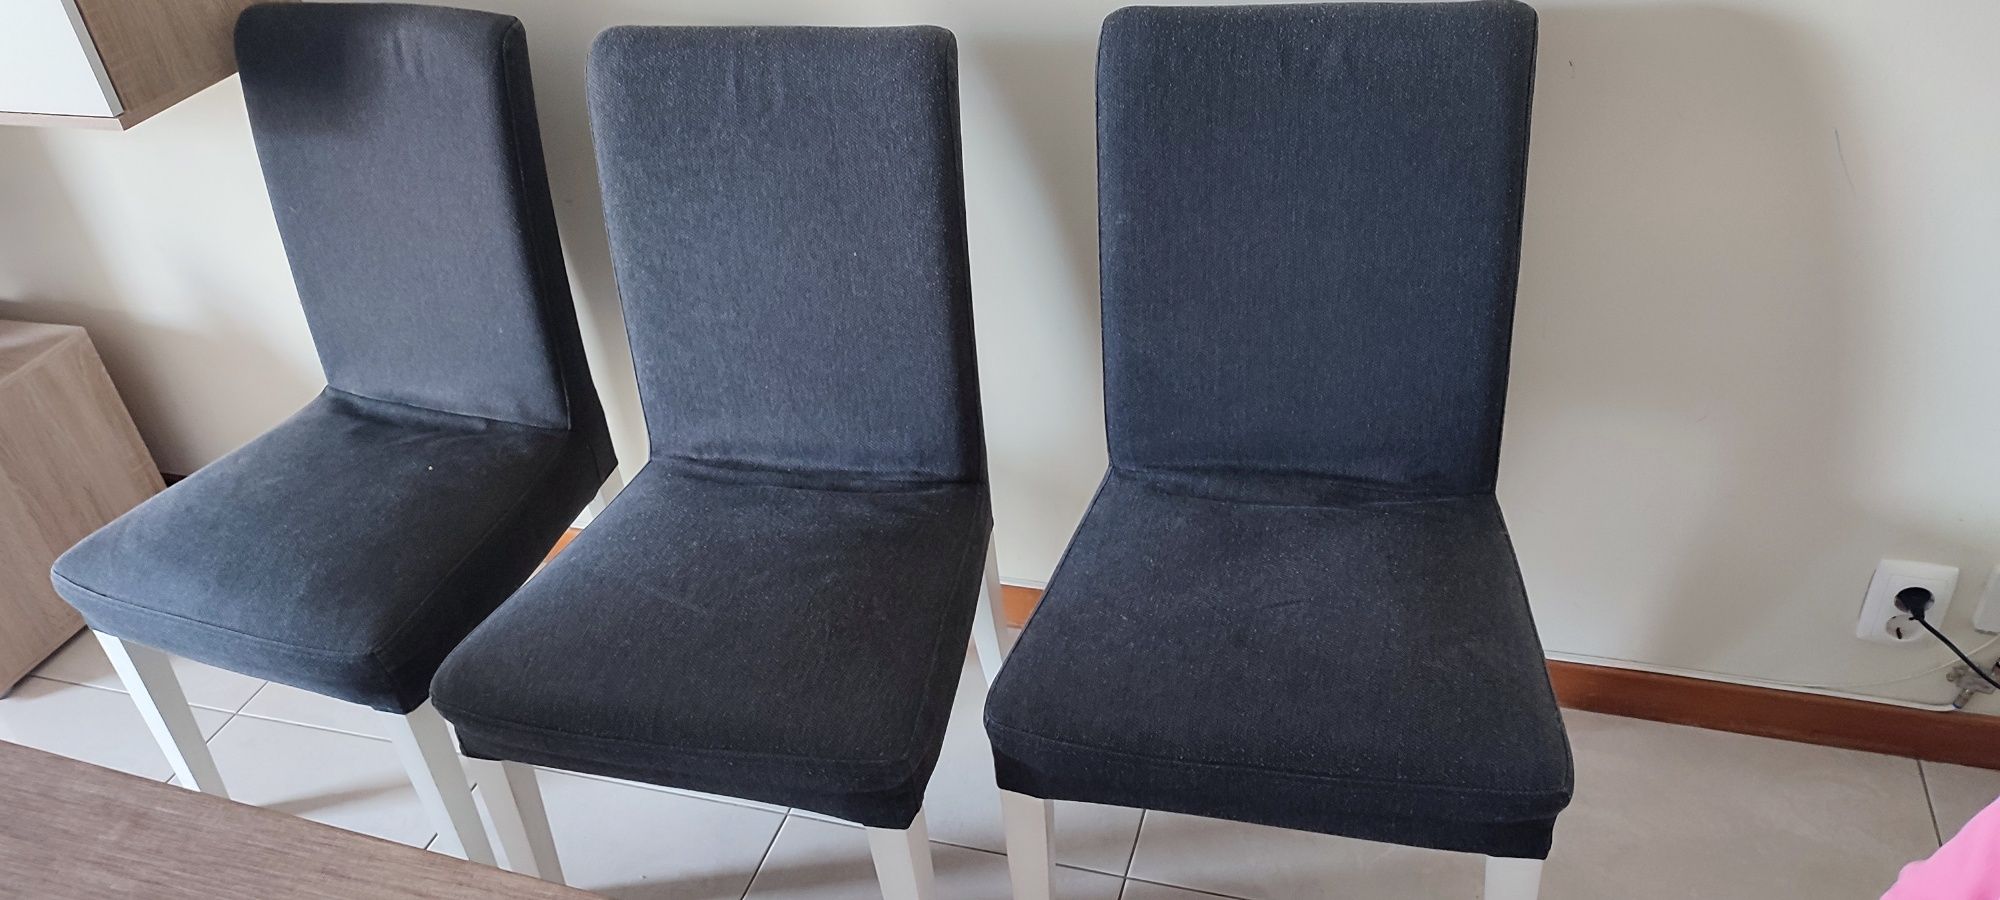 Hoje 150€  6 cadeiras em bom estado